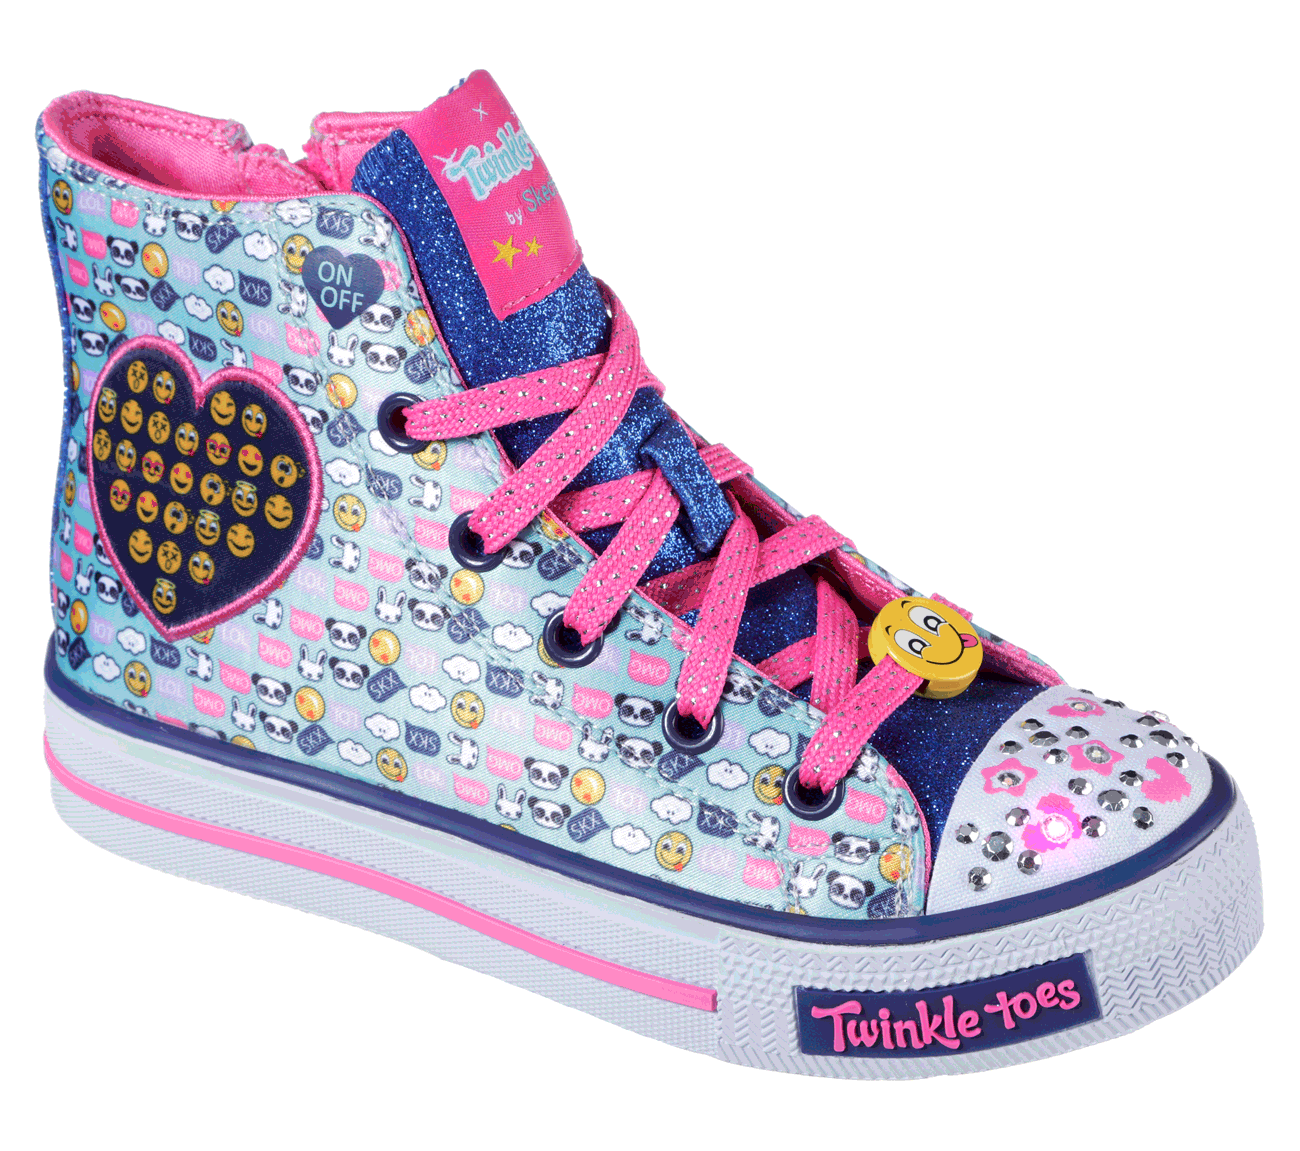 twinkle toes emoji shoes